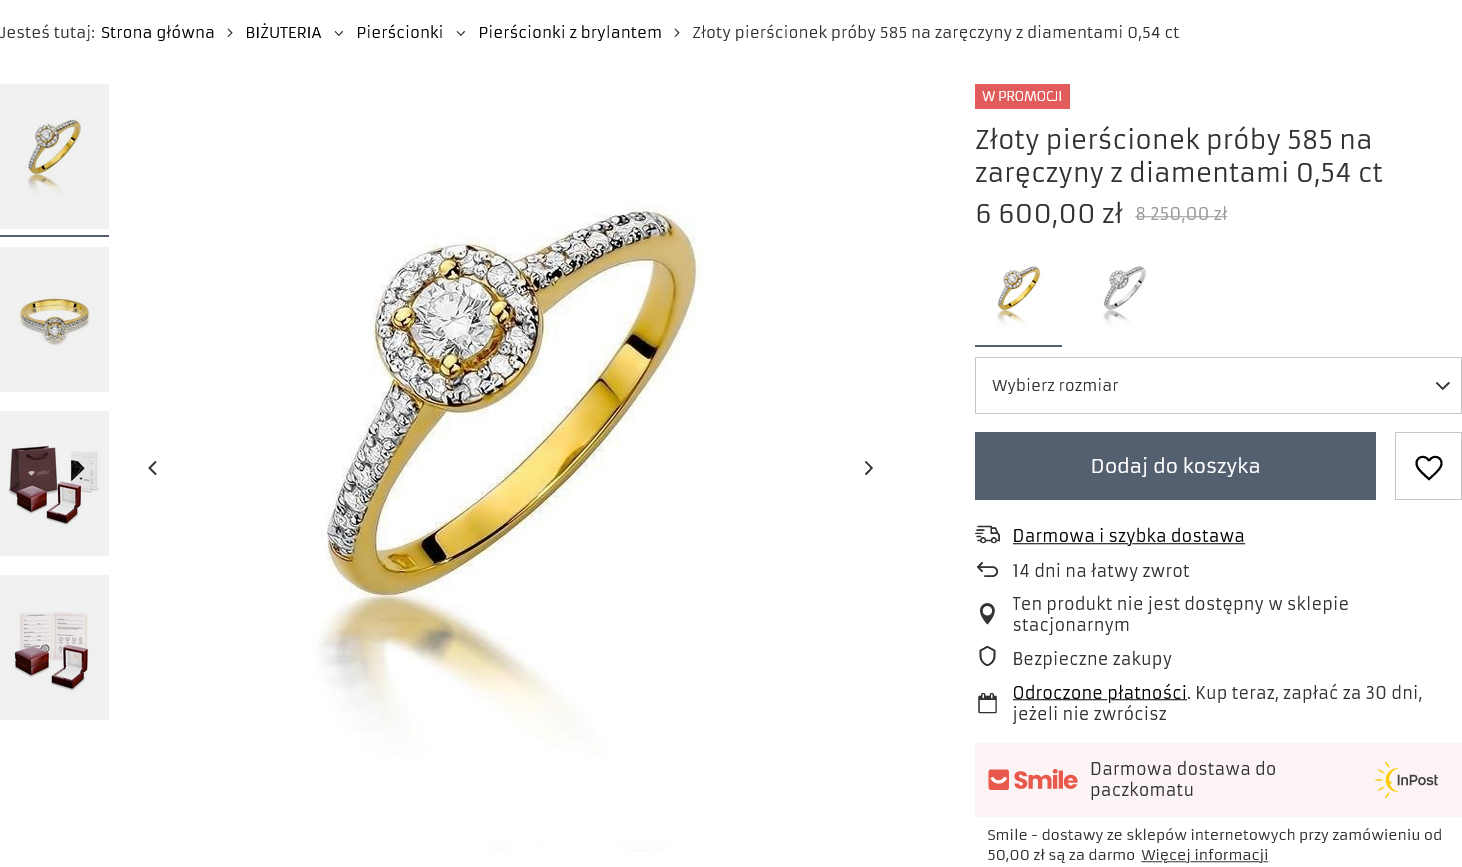 Strona produktu i zdjęcia pierścionka na stronie jubilera